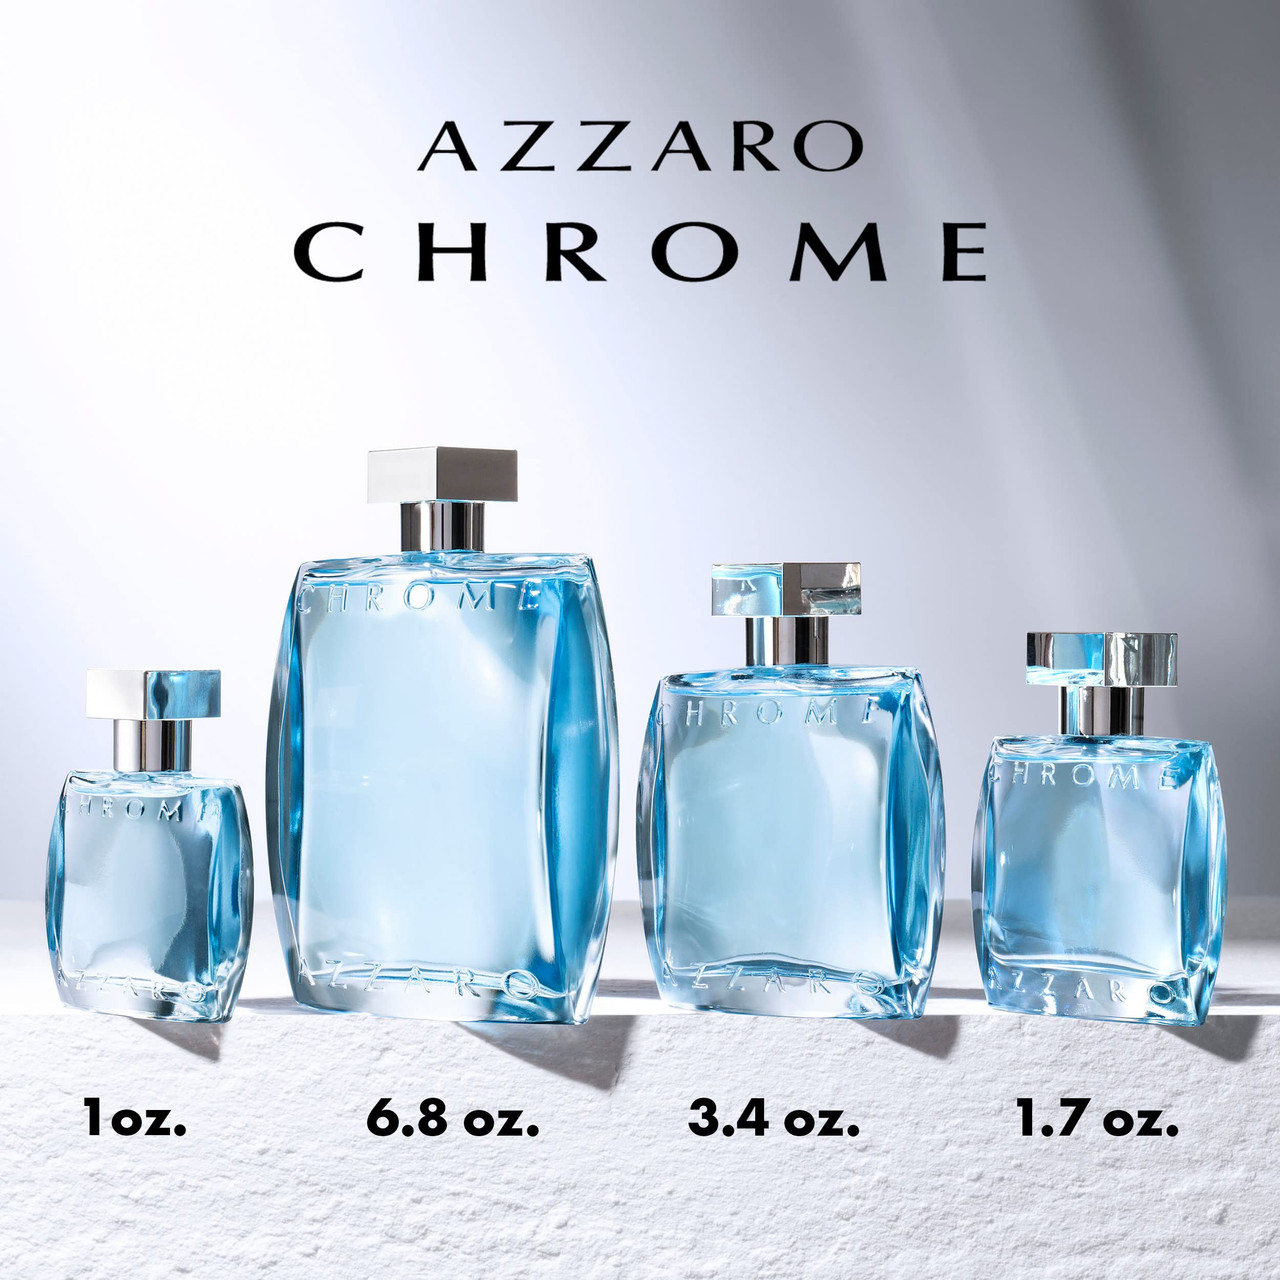 Azzaro Chrome Eau de Toilette Mens Cologne Citrus, Aquatic & Woody Fragrance